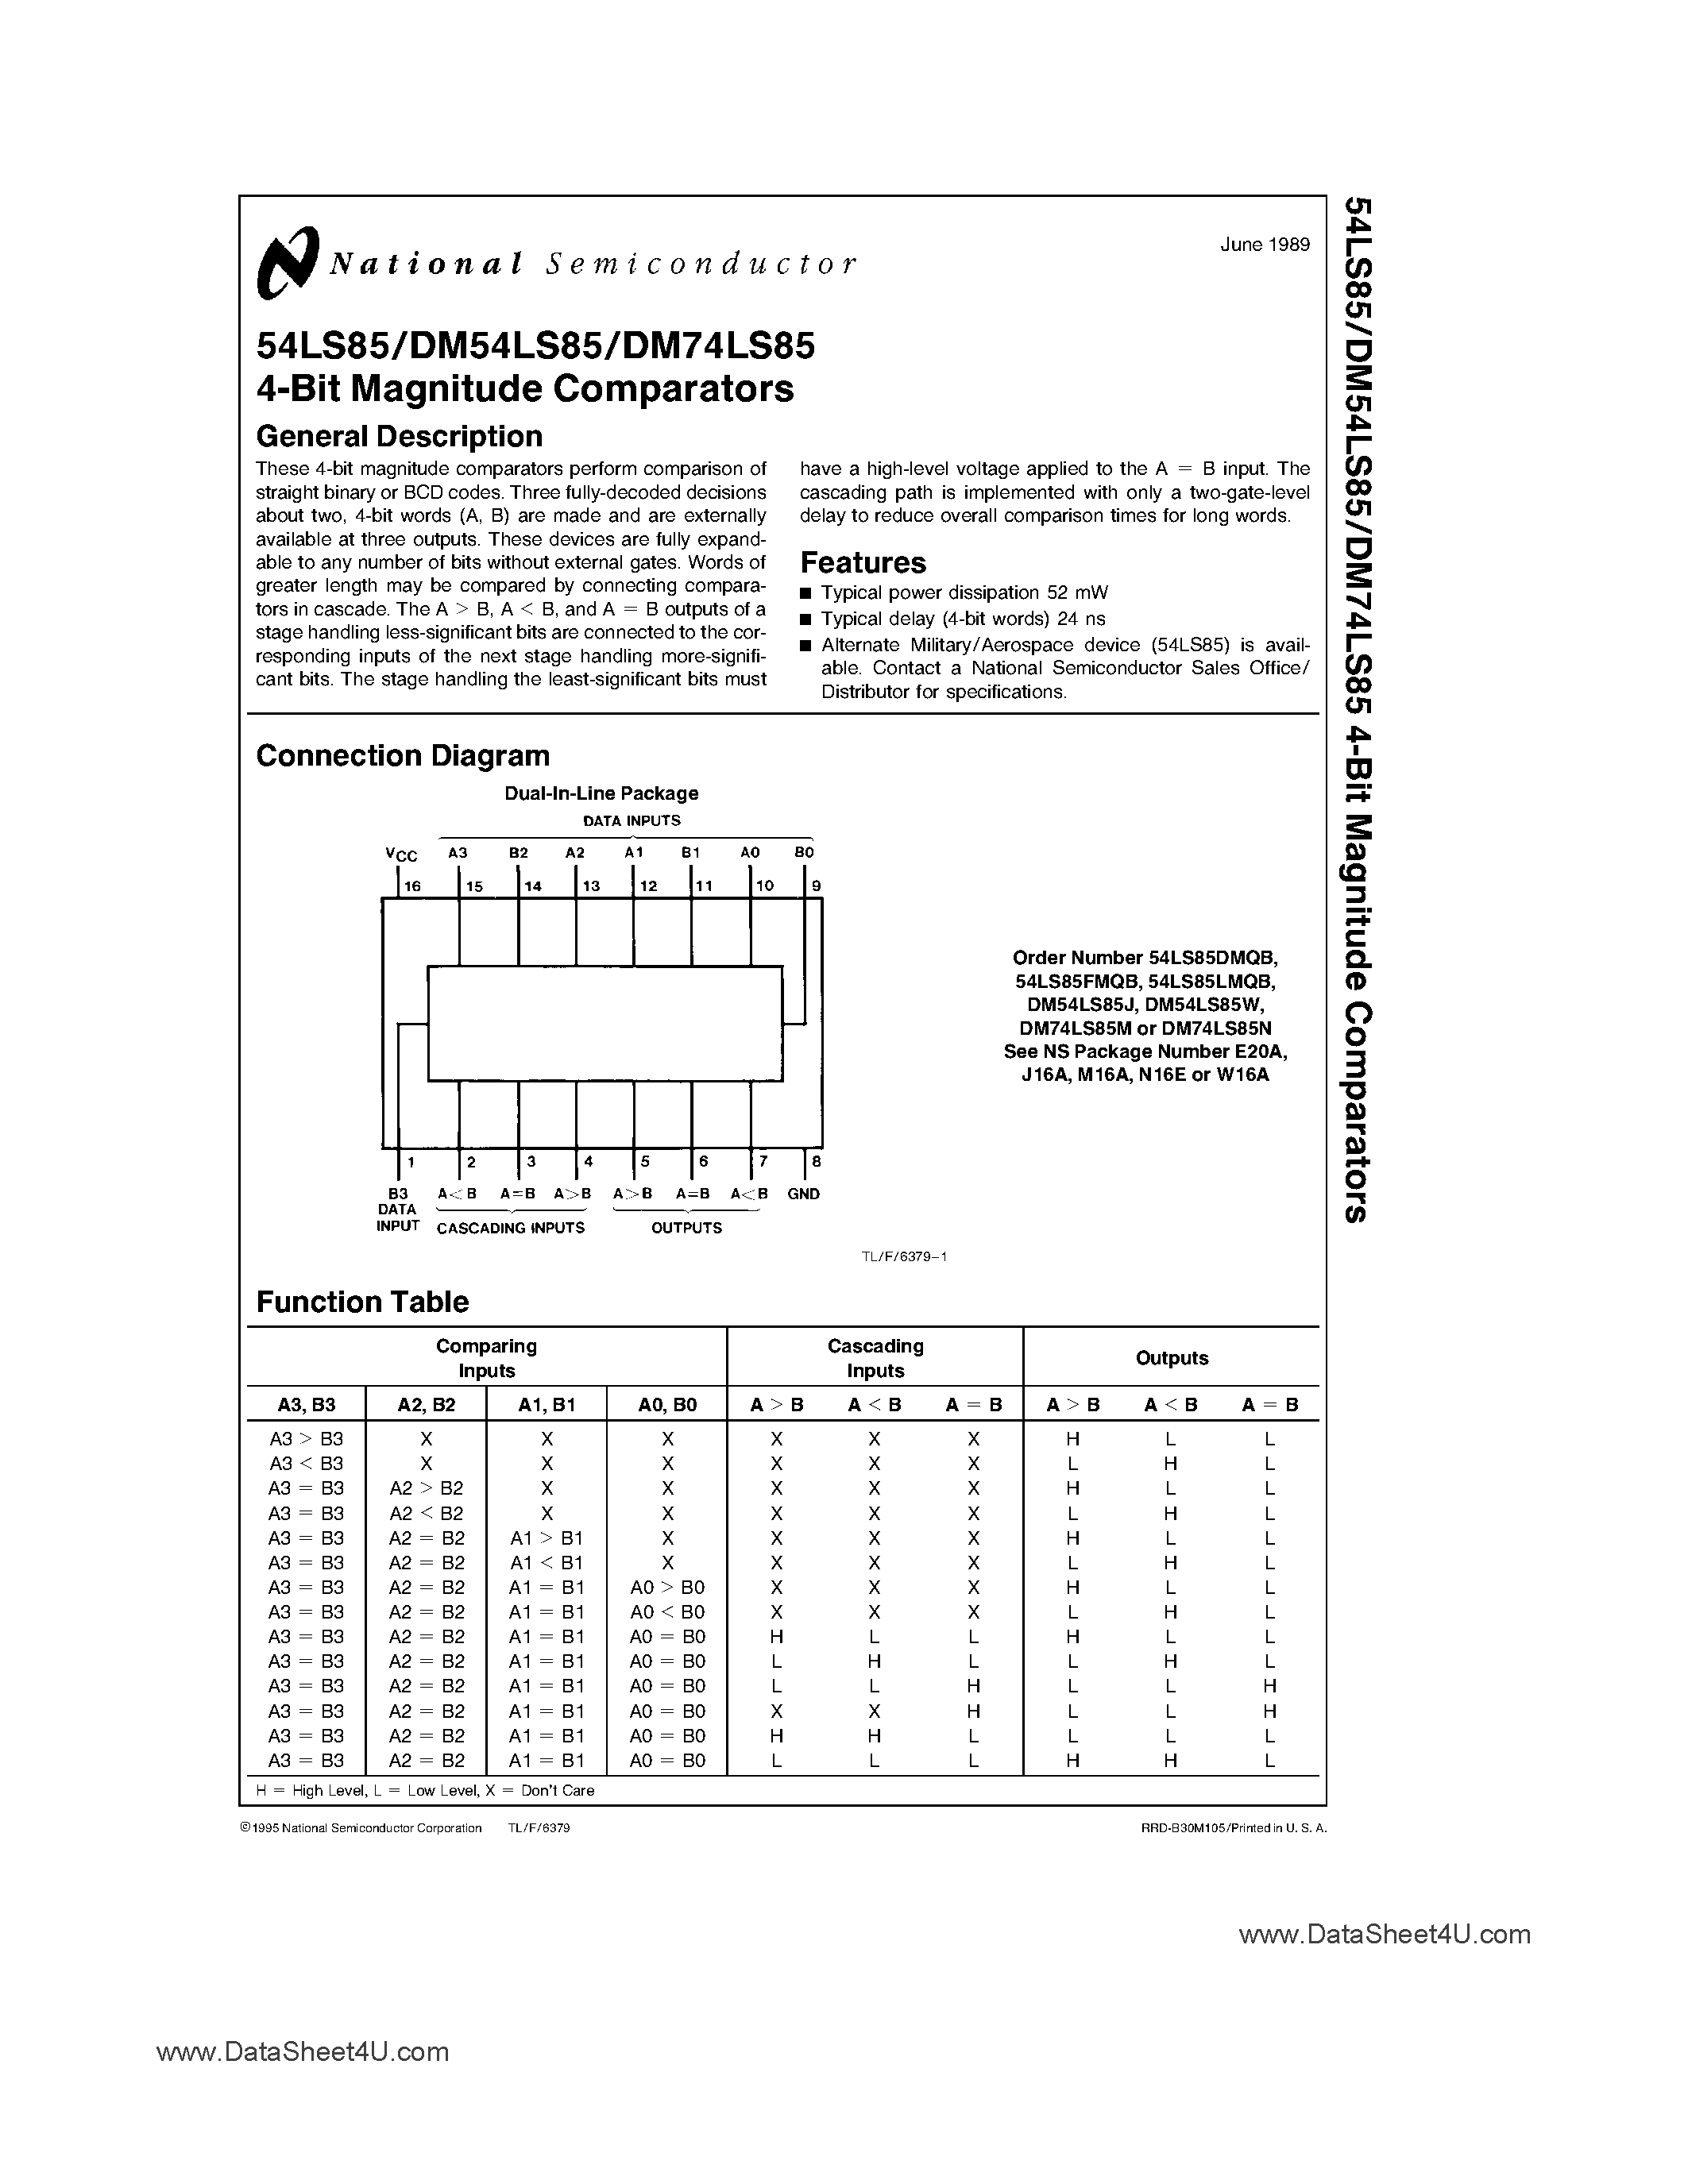 Datasheet DM74LS85 - 4-Bit Magnitude Comparators page 1